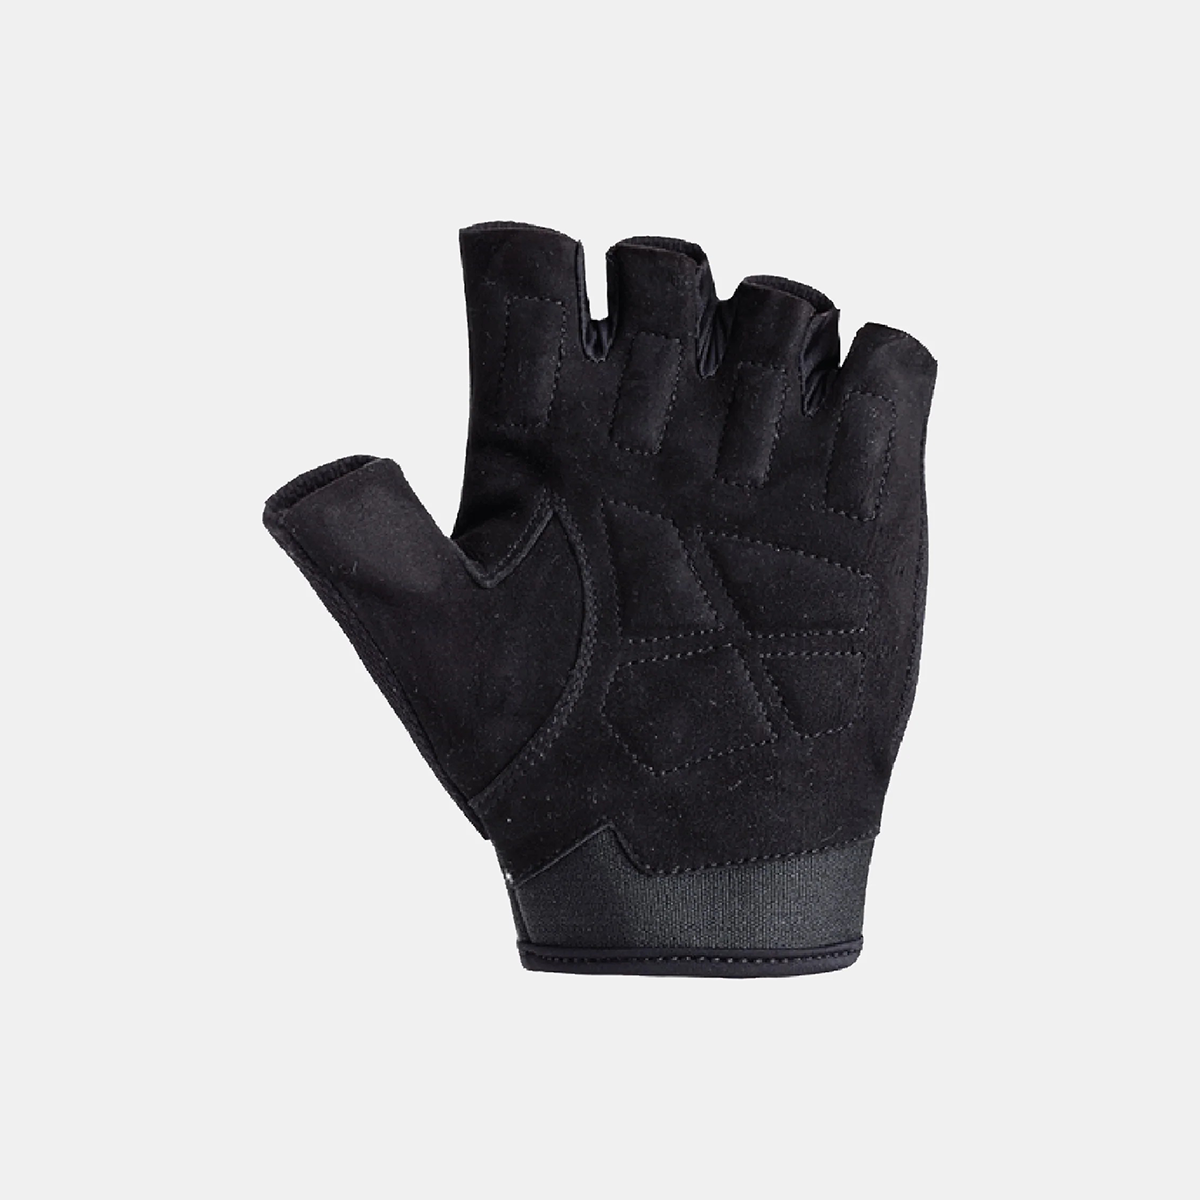 Sting M1 Magnum Training Glove - Black/Black